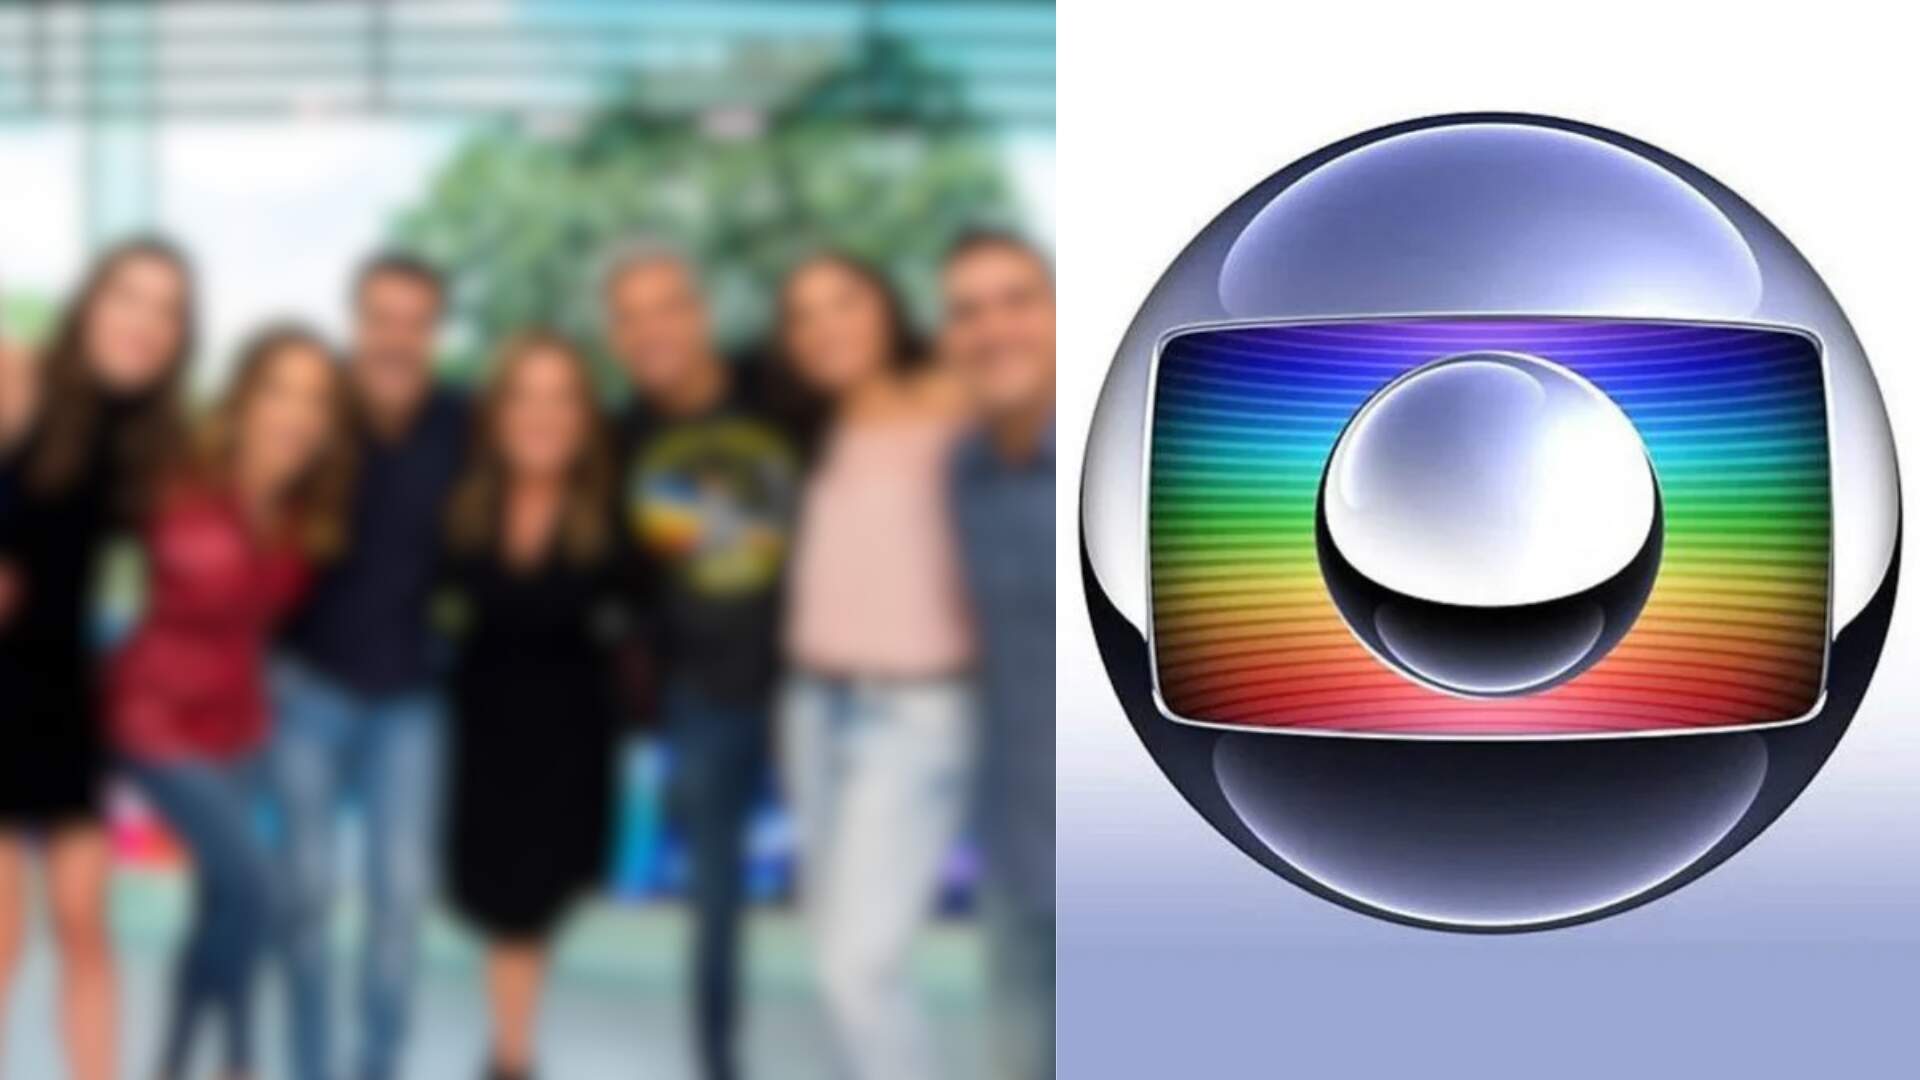 Em meio a uma crise financeira, Globo toma atitude drástica envolvendo apresentadores do alto escalão - Metropolitana FM